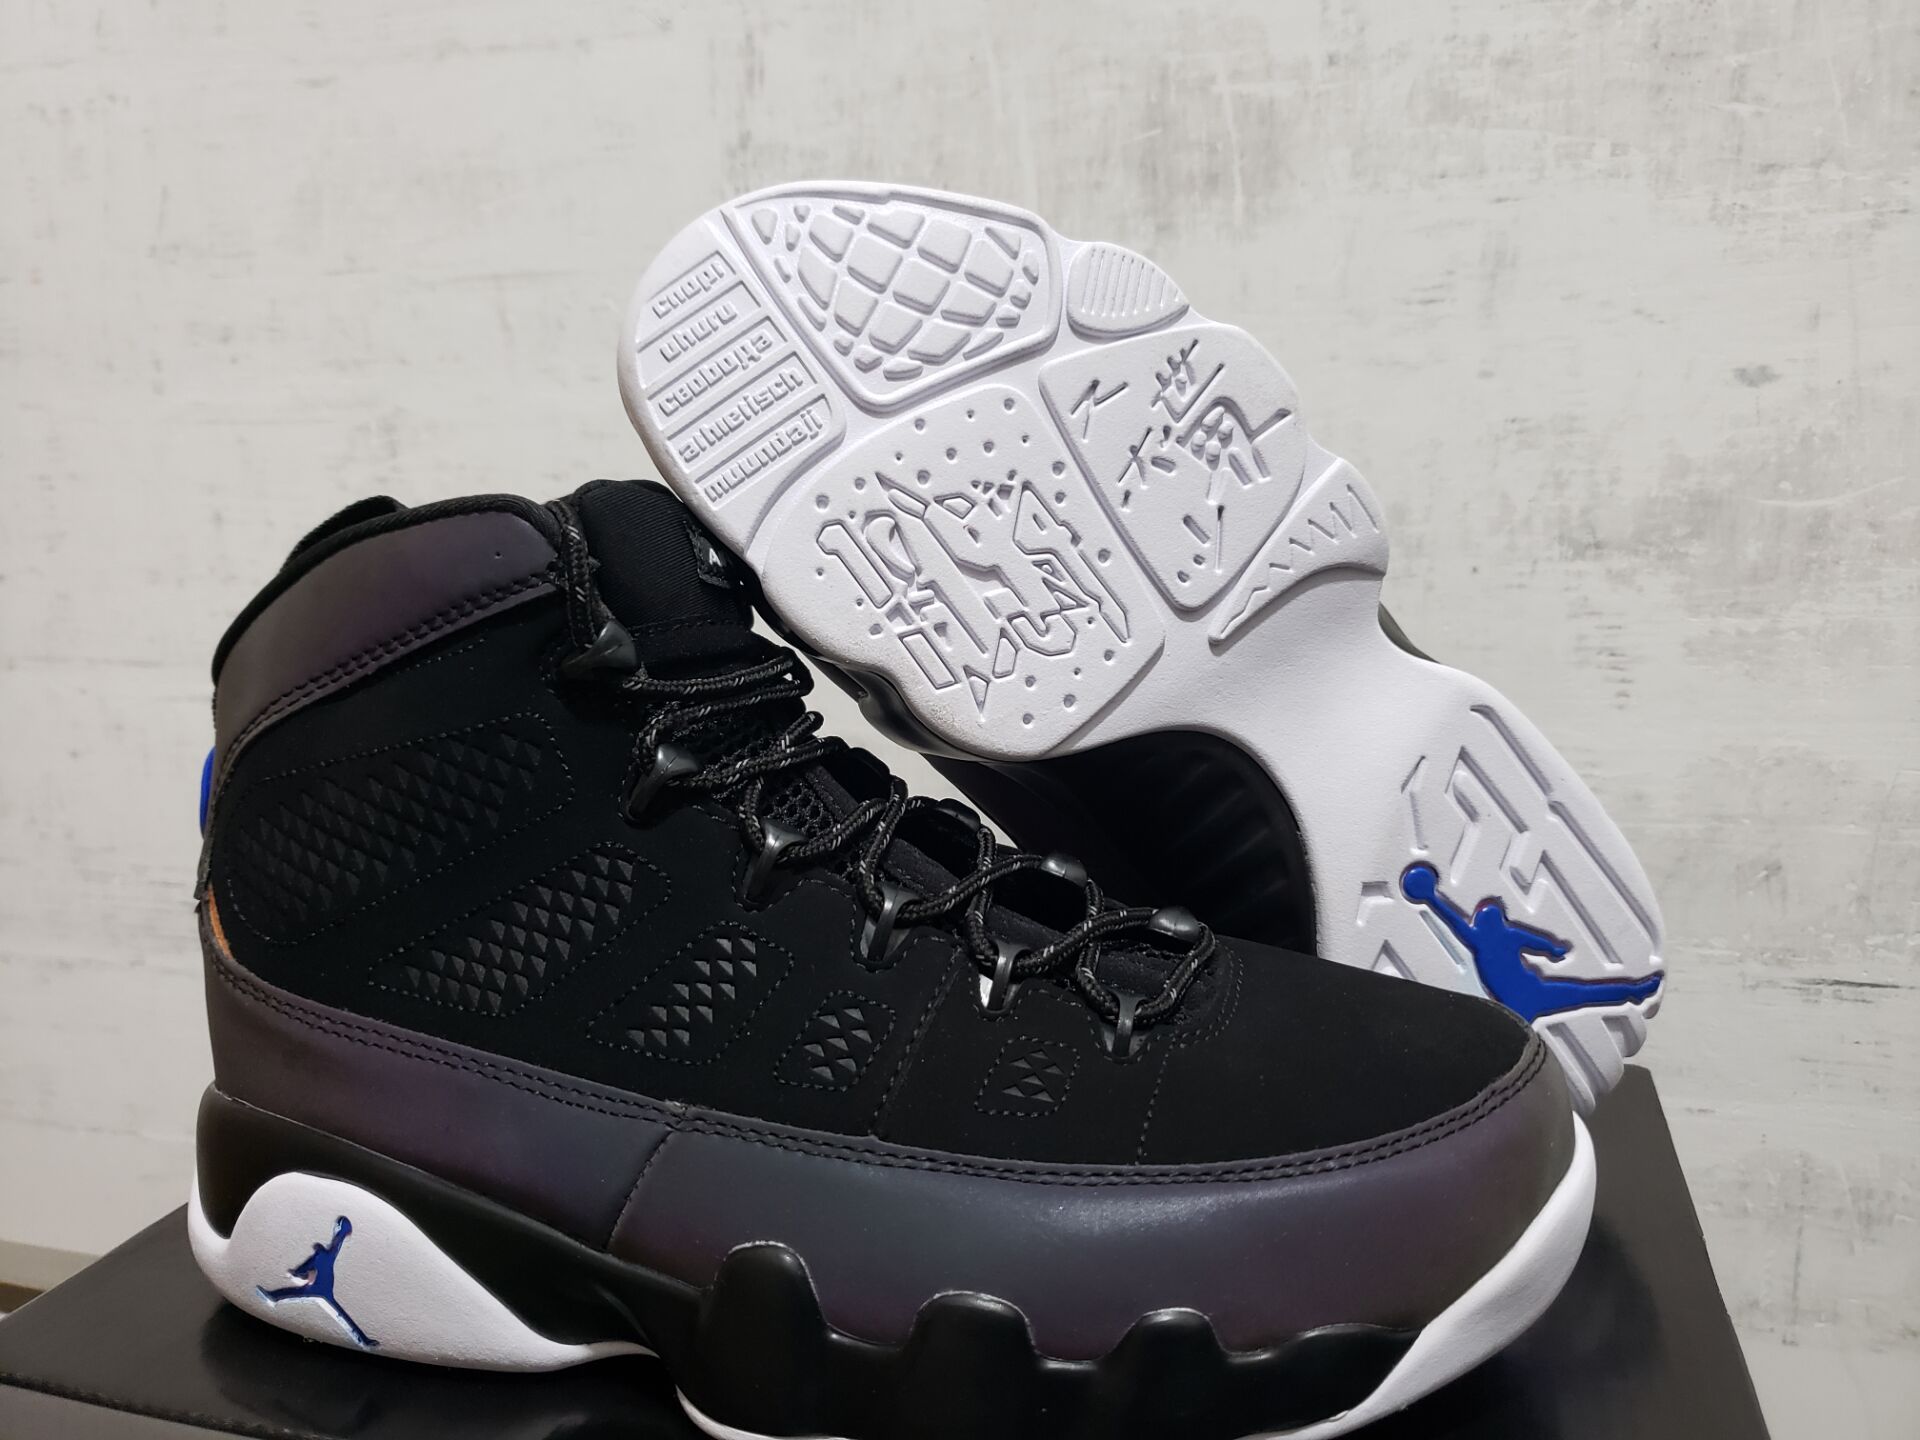 2019 Men Air Jordan 9 Chamelon Black Grey White Blue Shoes